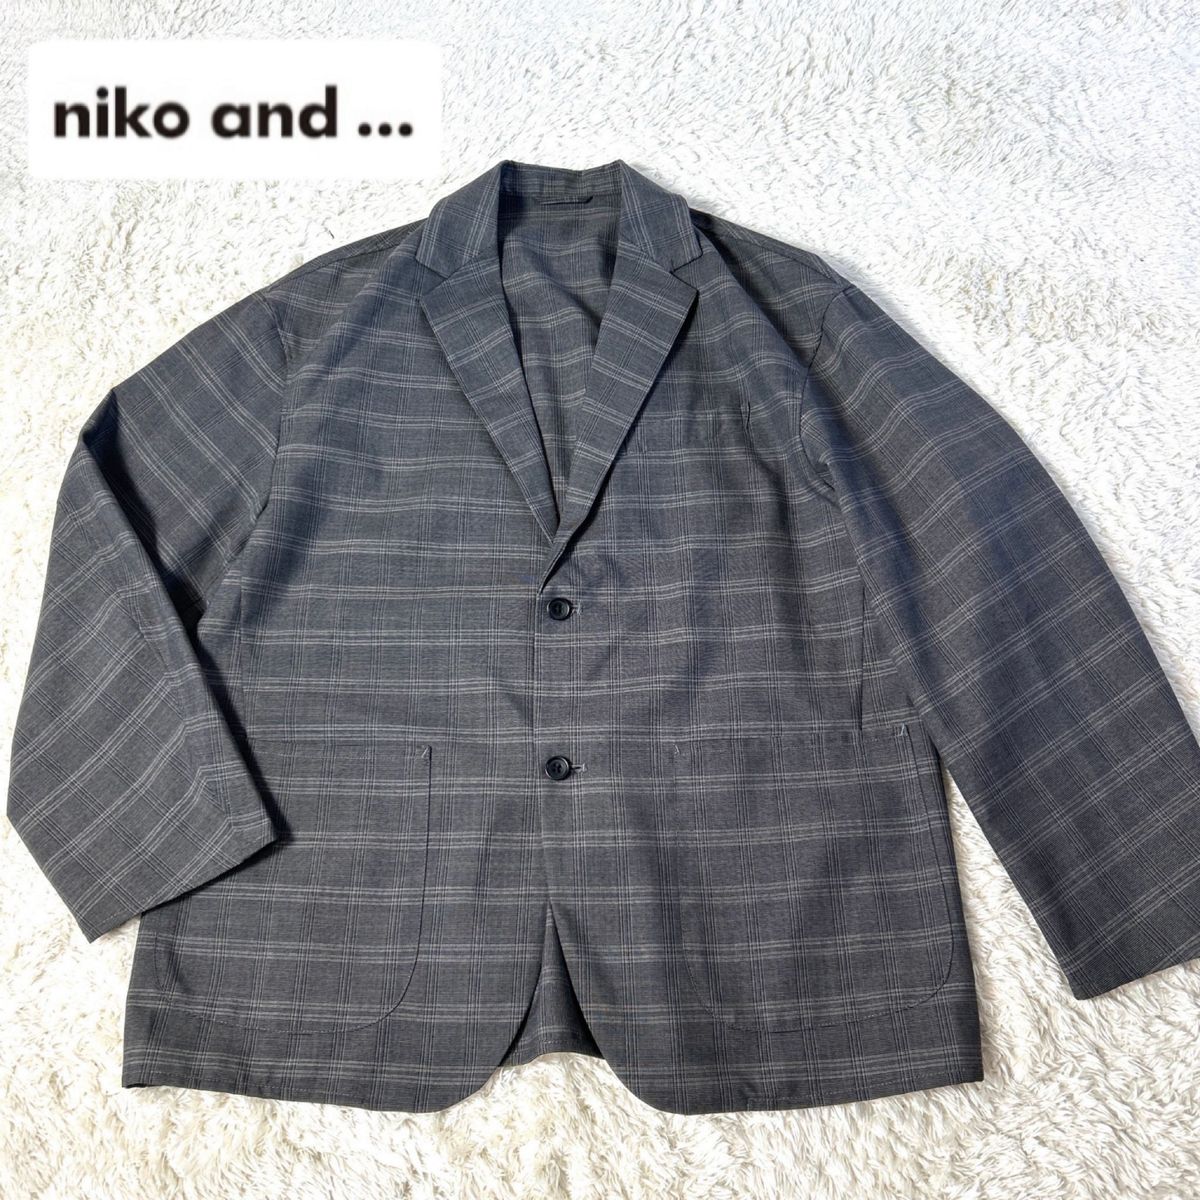 【美品】nico and... カジュアルテーラードジャケット グレー×チェック